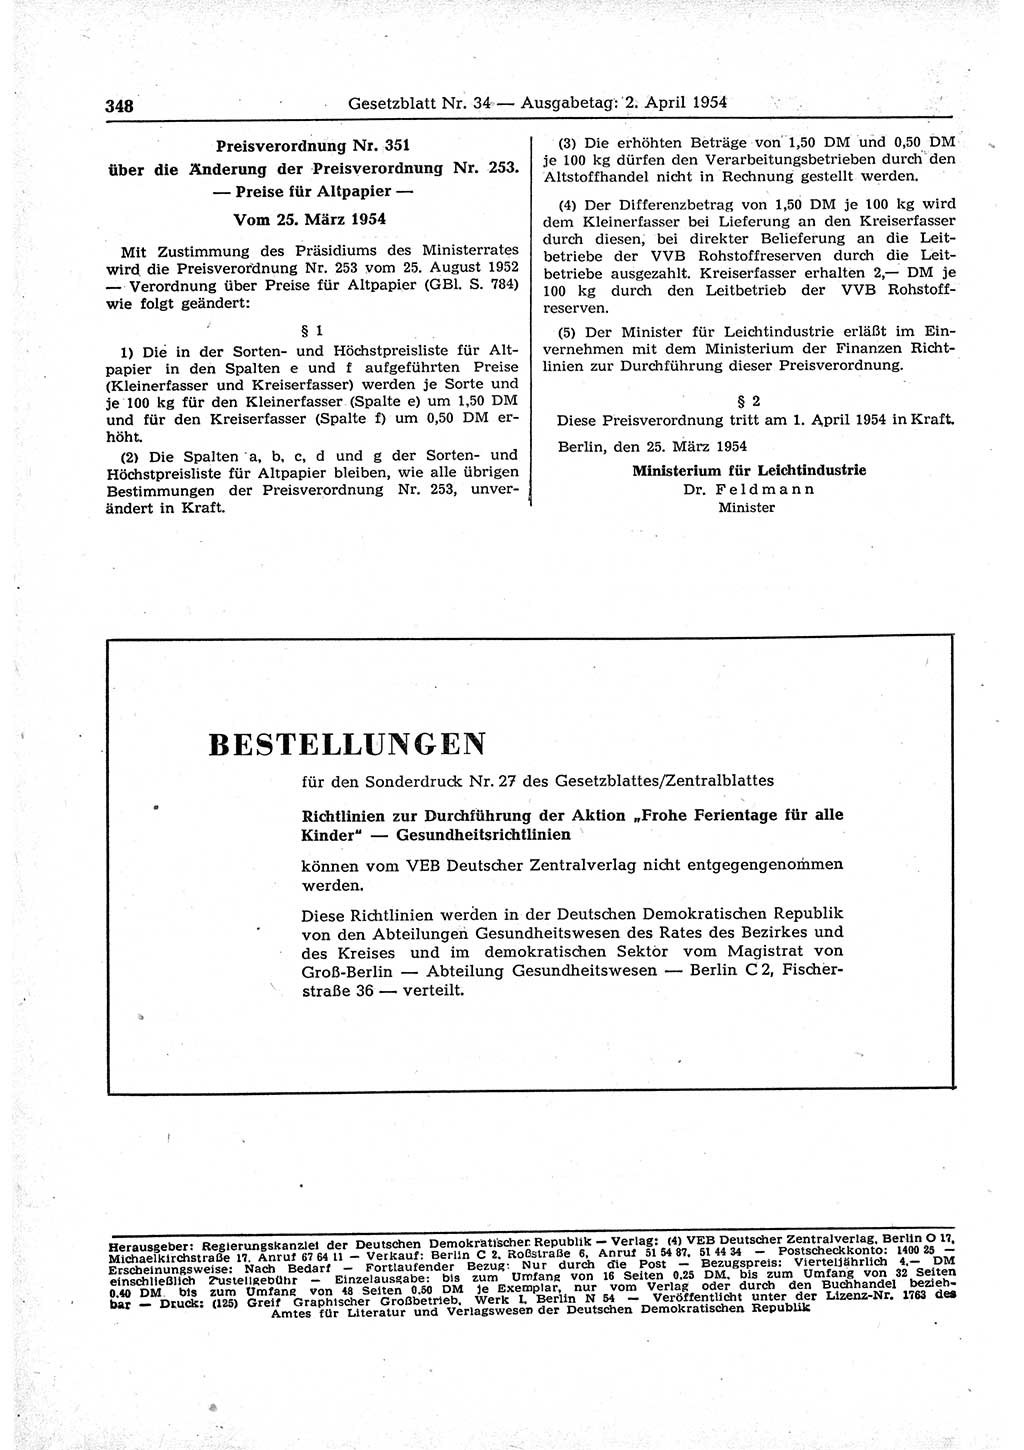 Gesetzblatt (GBl.) der Deutschen Demokratischen Republik (DDR) 1954, Seite 348 (GBl. DDR 1954, S. 348)